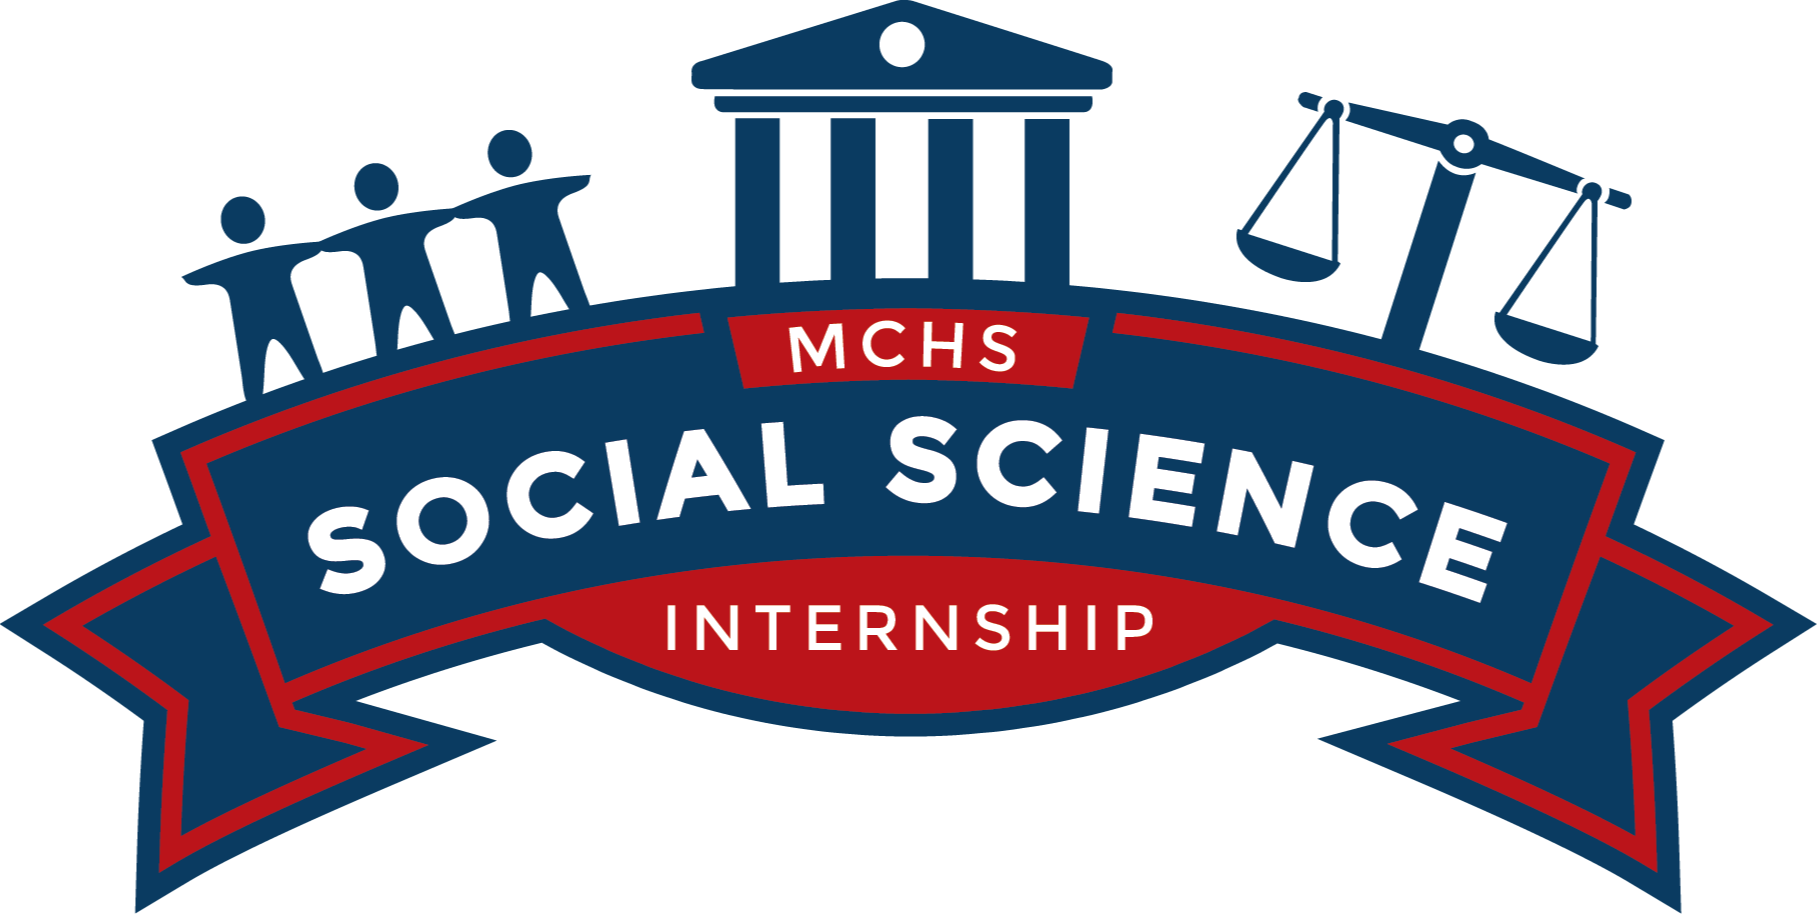 MCHS Social Science Internship 